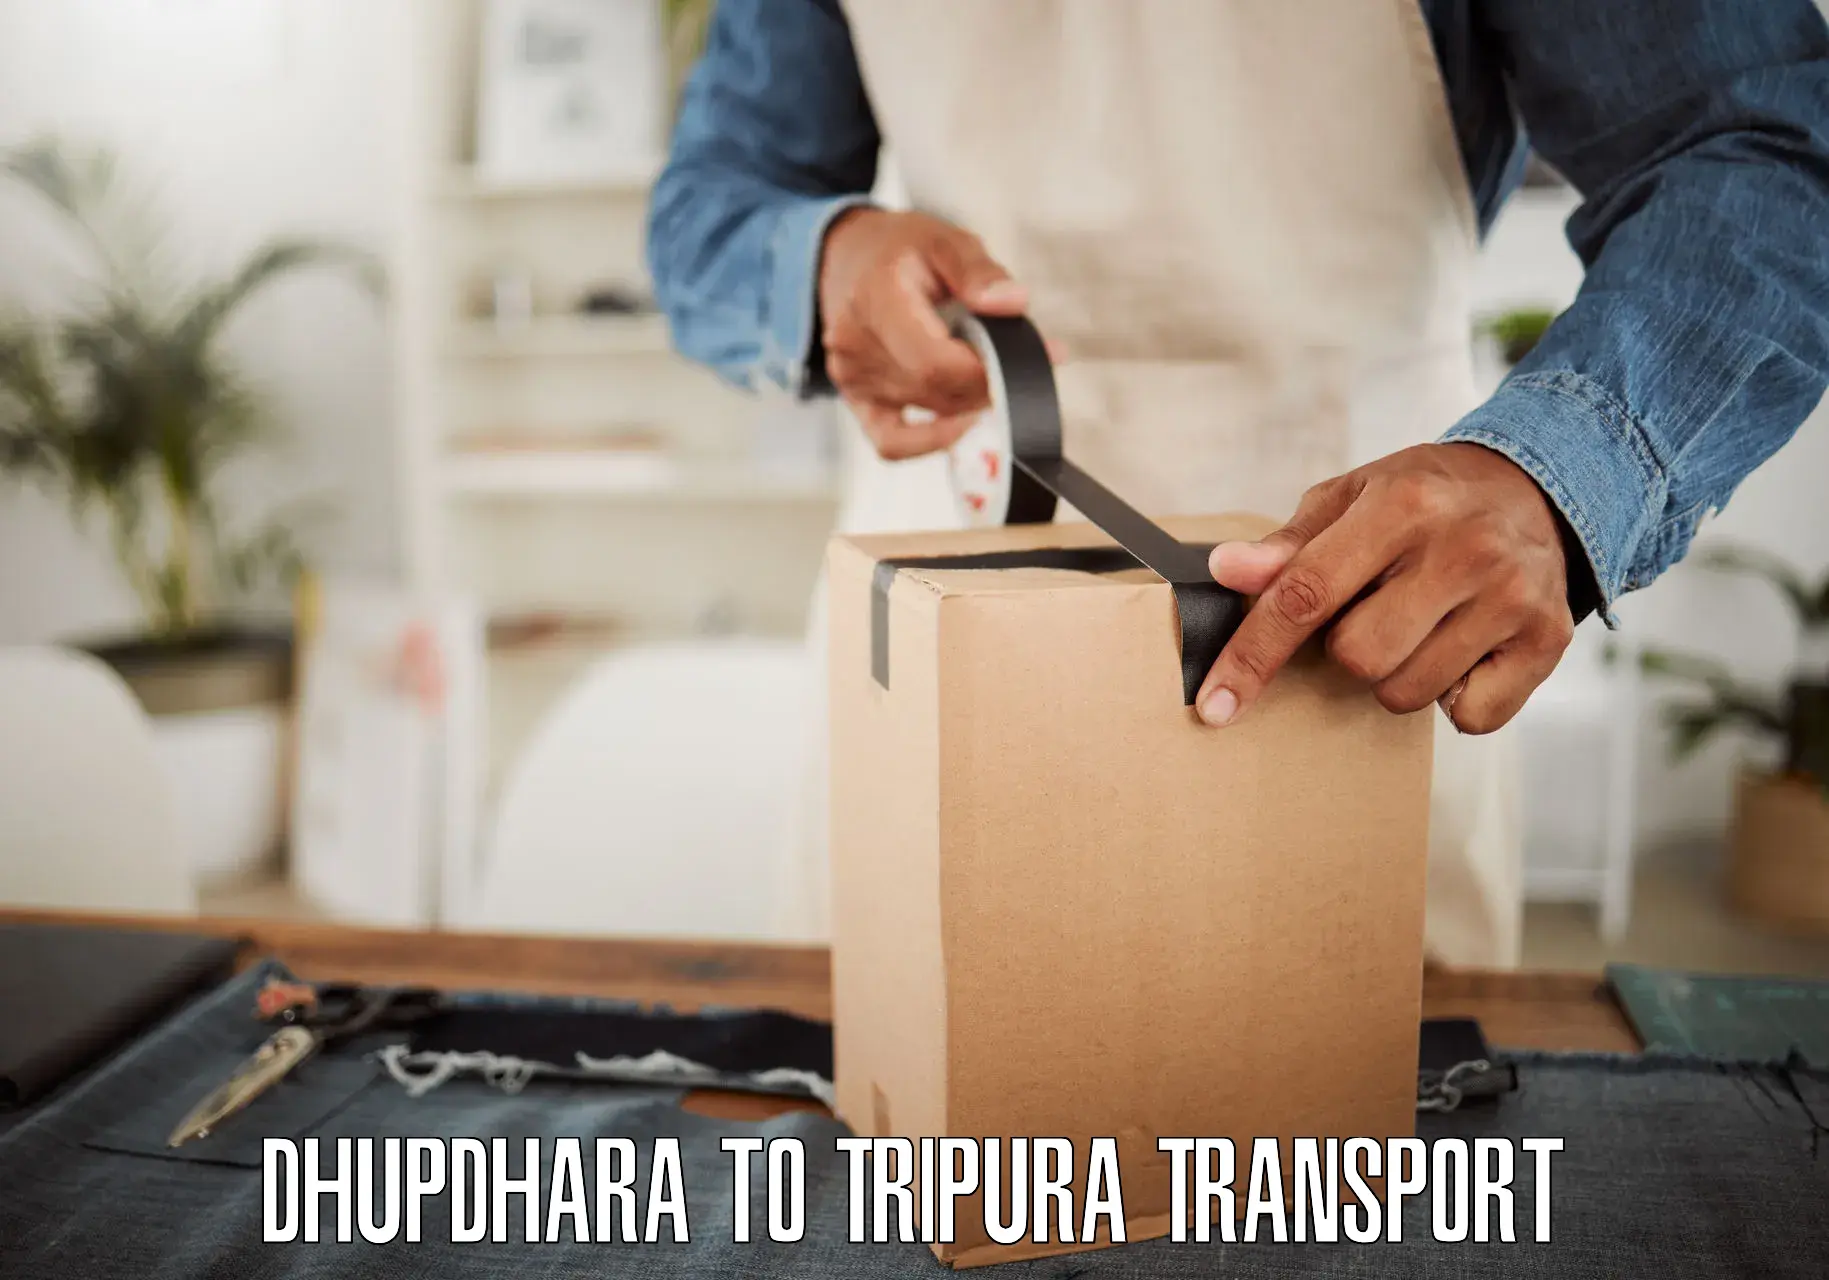 Express transport services Dhupdhara to Bishalgarh